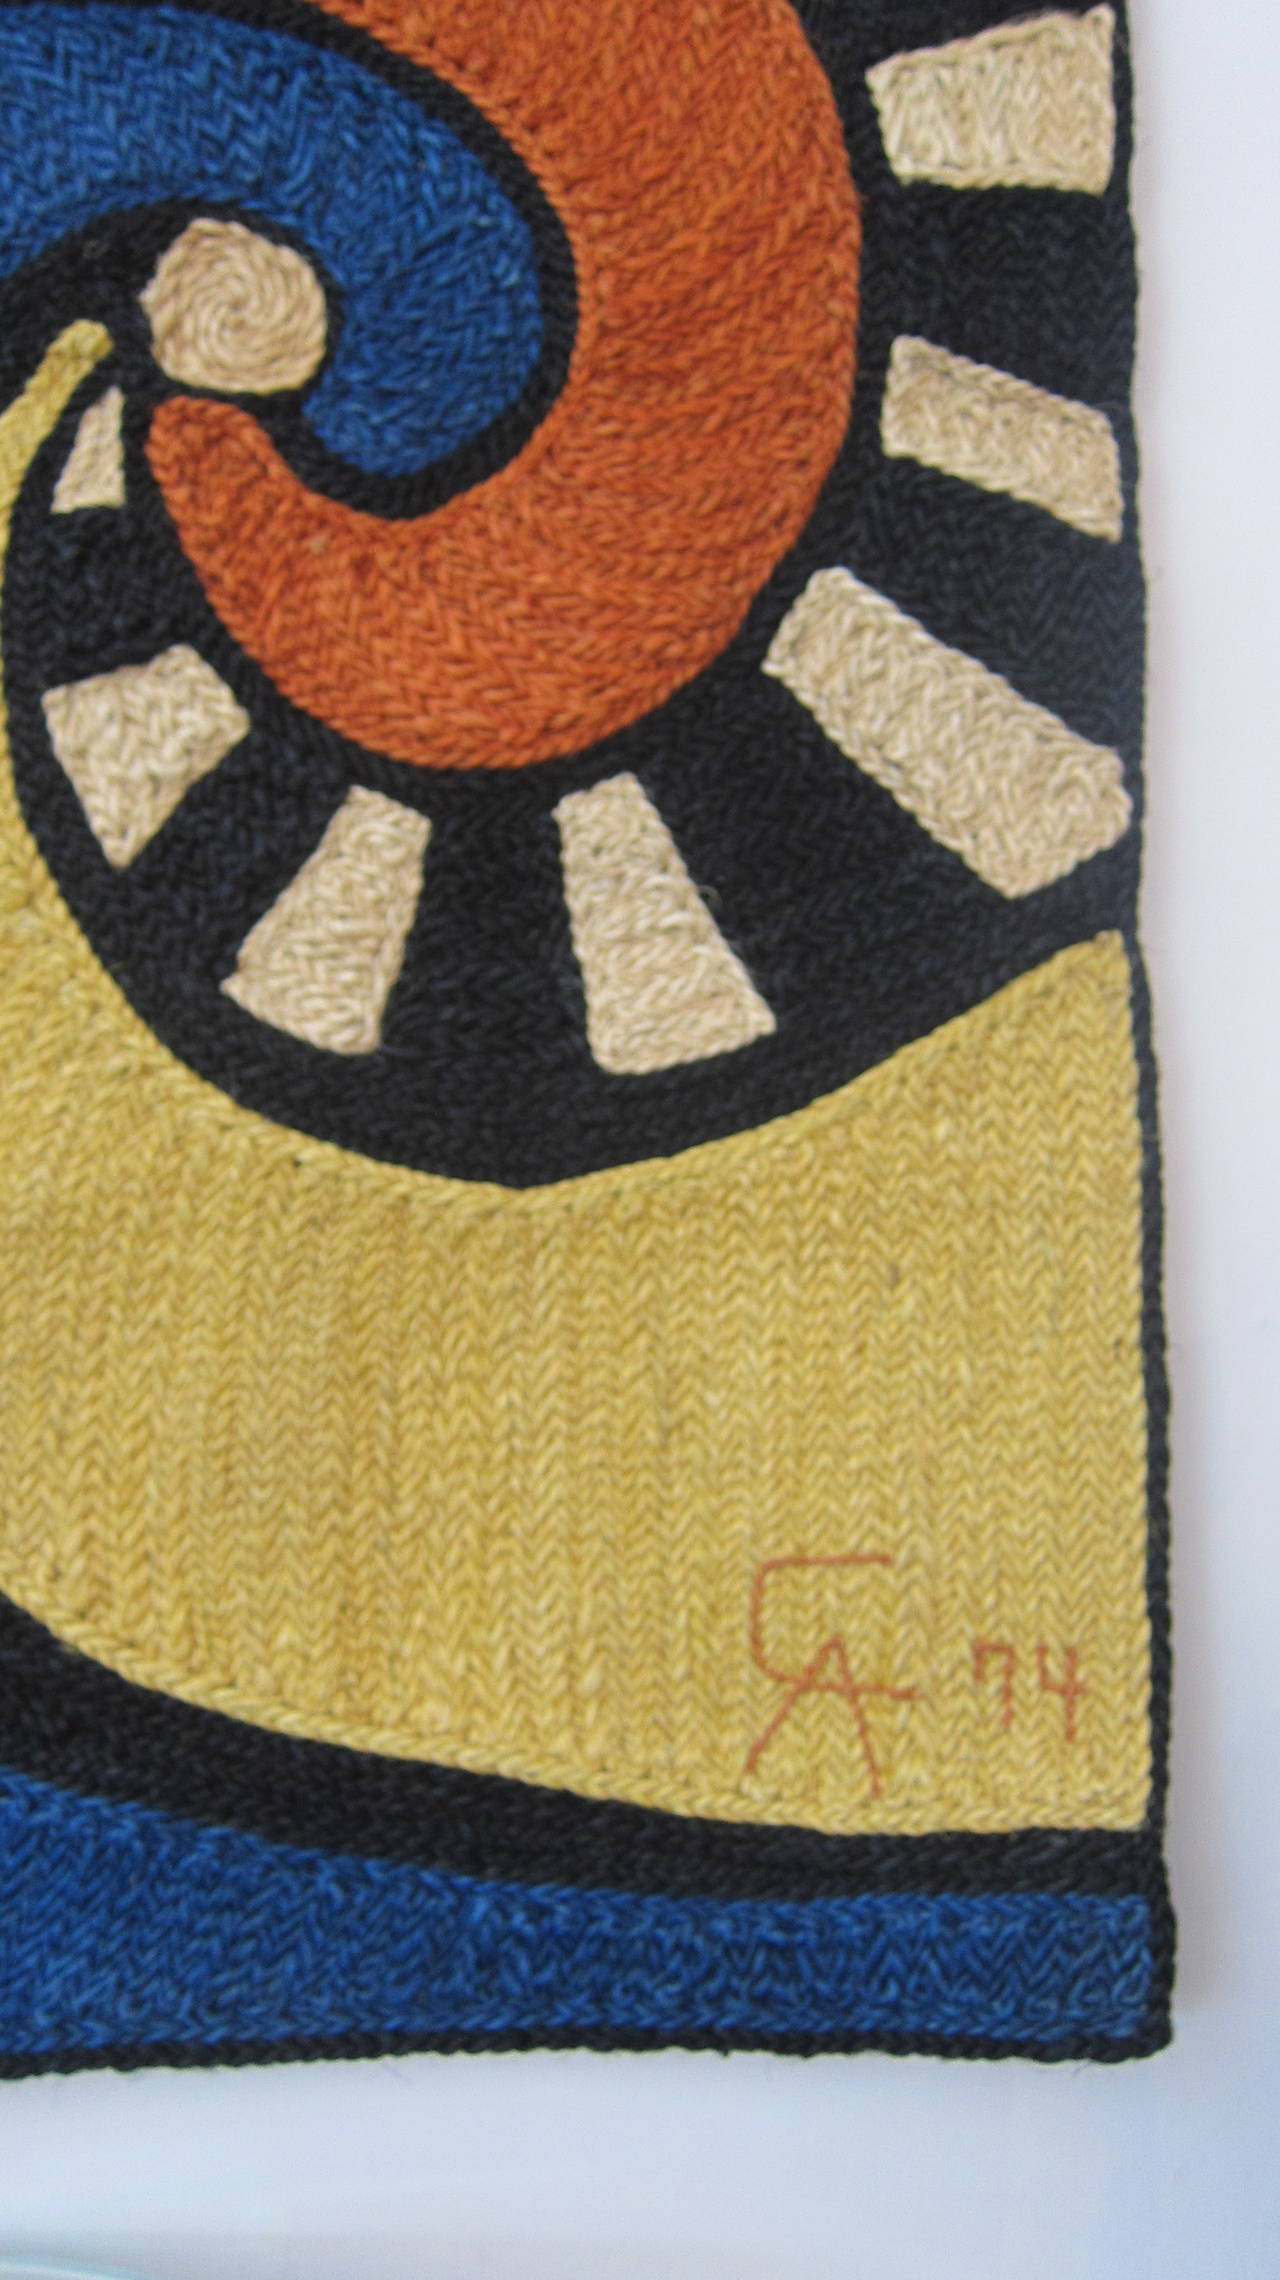 After Alexander Calder (1898-1976).
Bon Art.
Jute fiber wall hanging, 